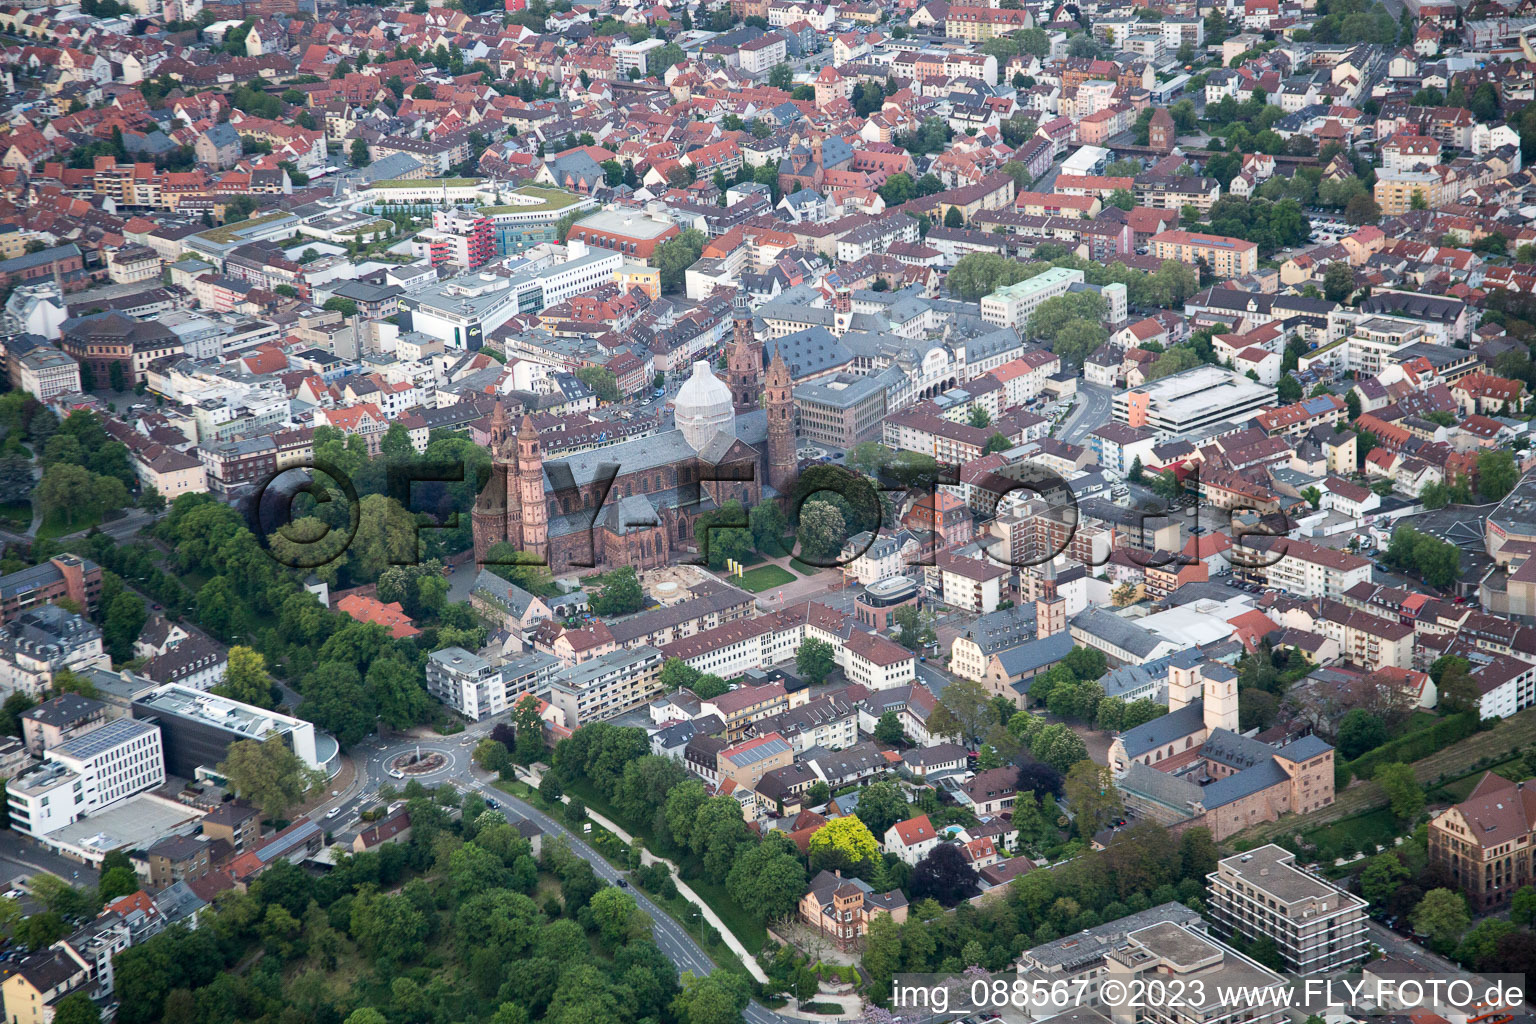 Luftbild von Kaiser-Dom St. Peter in Worms im Bundesland Rheinland-Pfalz, Deutschland